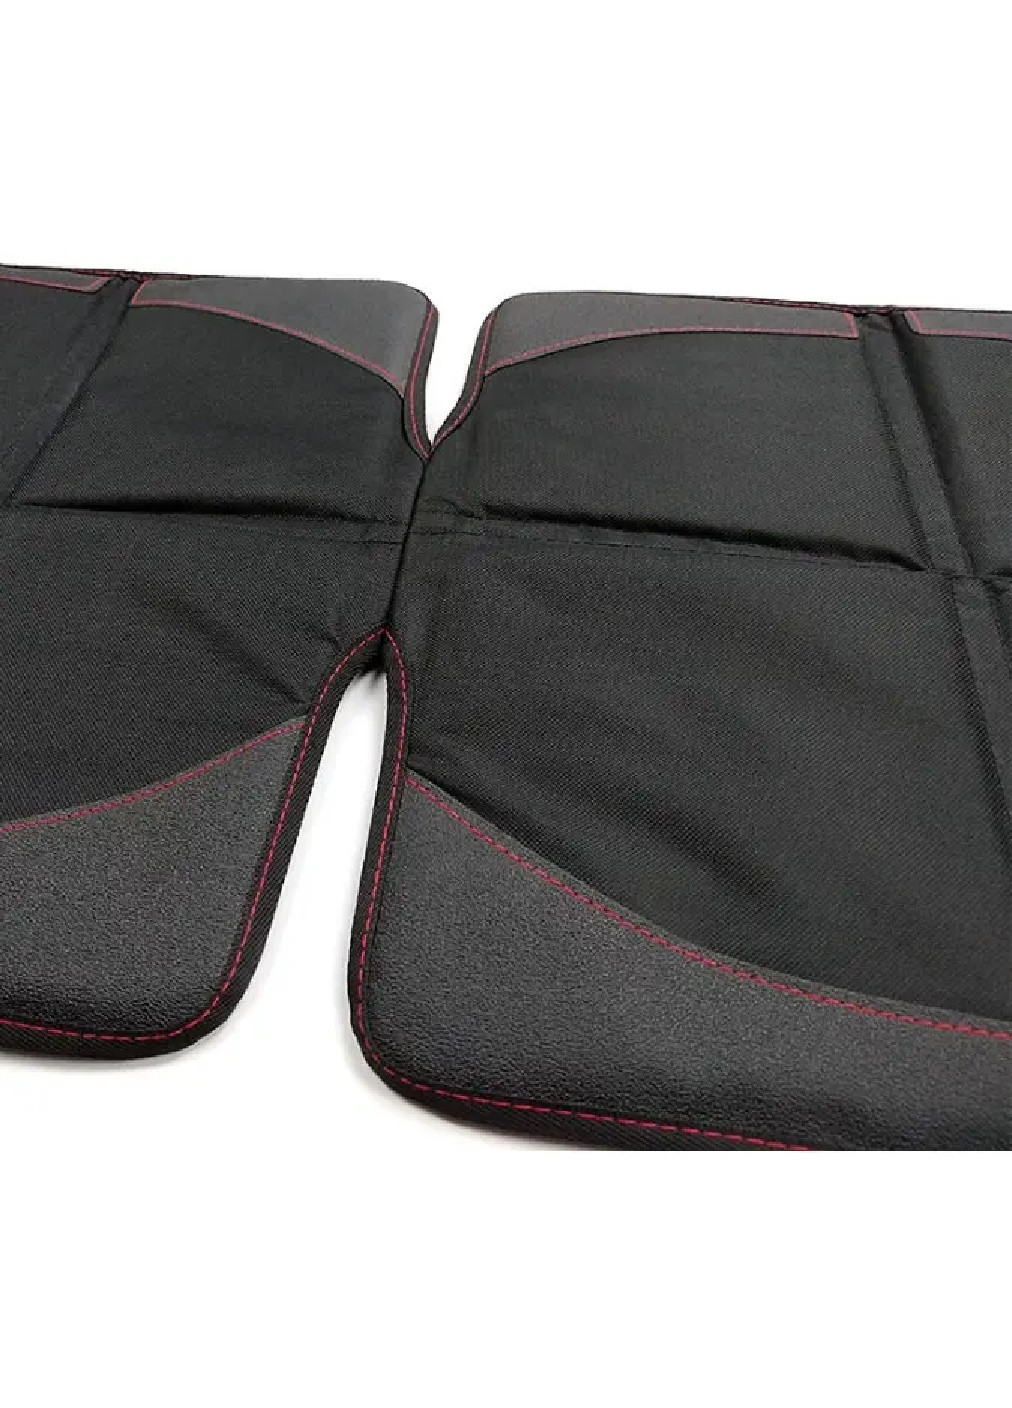 Защитный коврик чехол под детское автокресло в машину автомобиль средней плотности 58х48х44 см (475999-Prob) Черный с красным Unbranded (275456643)